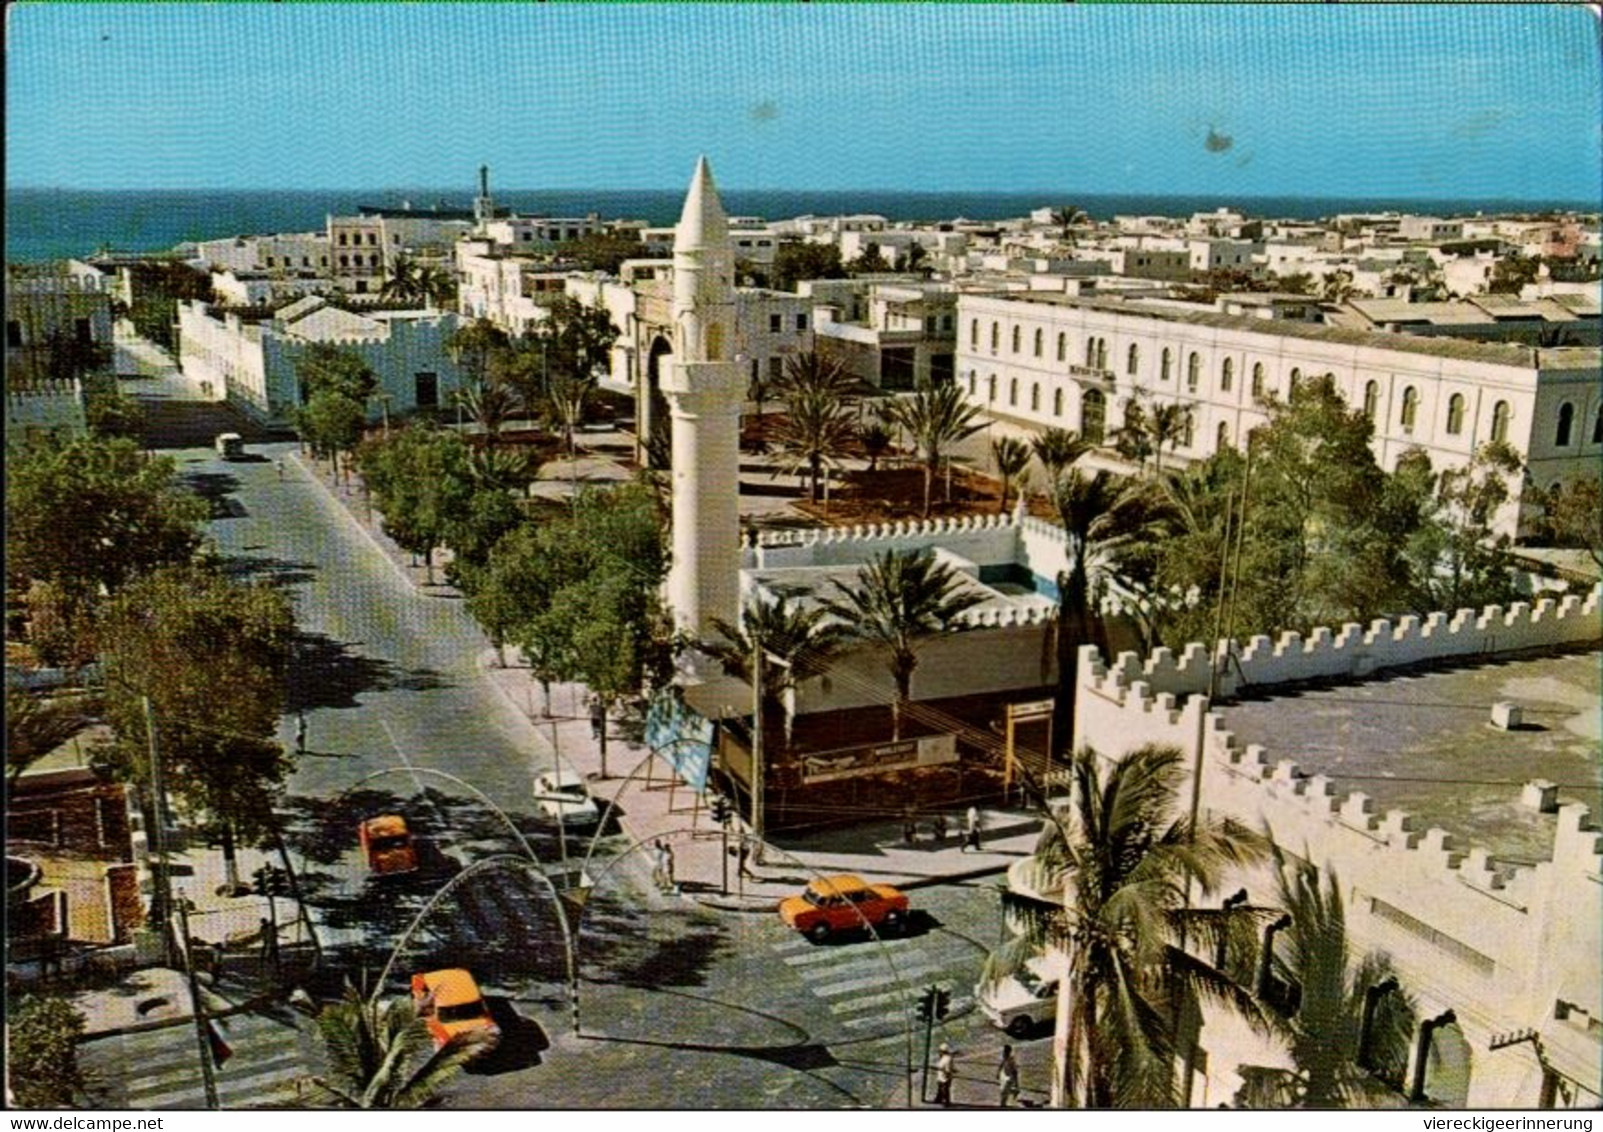 ! Moderne Ansichtskarte Aus Mogadischu, Moschee, Somalia, 1979, DDR, Berlin, Botschaftspost ? - Somalië